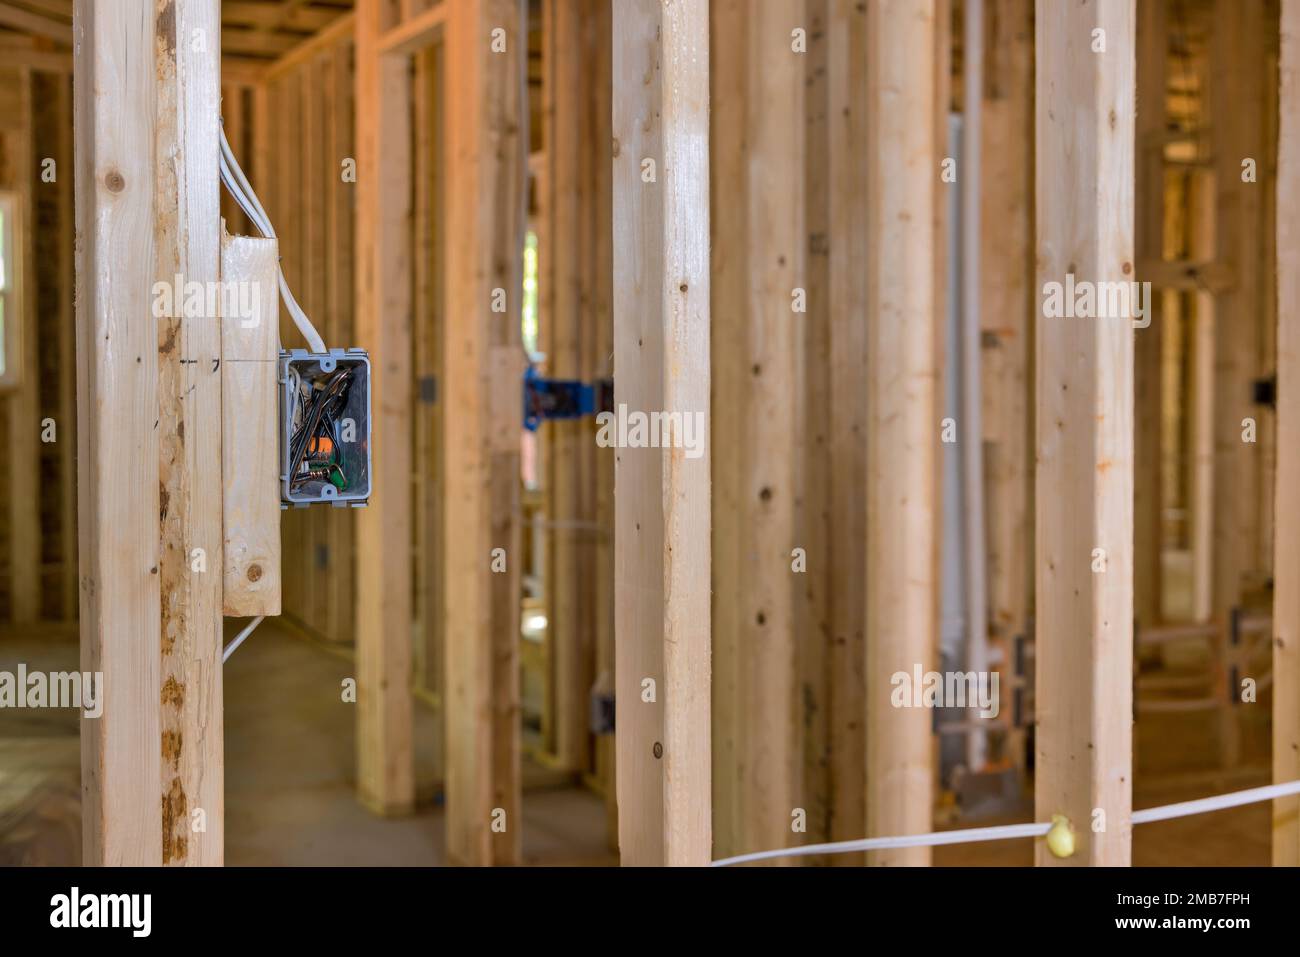 Le projet de construction résidentielle comprend l'encadrement du câblage système électrique de base une maison de cadre en bois non fini Banque D'Images